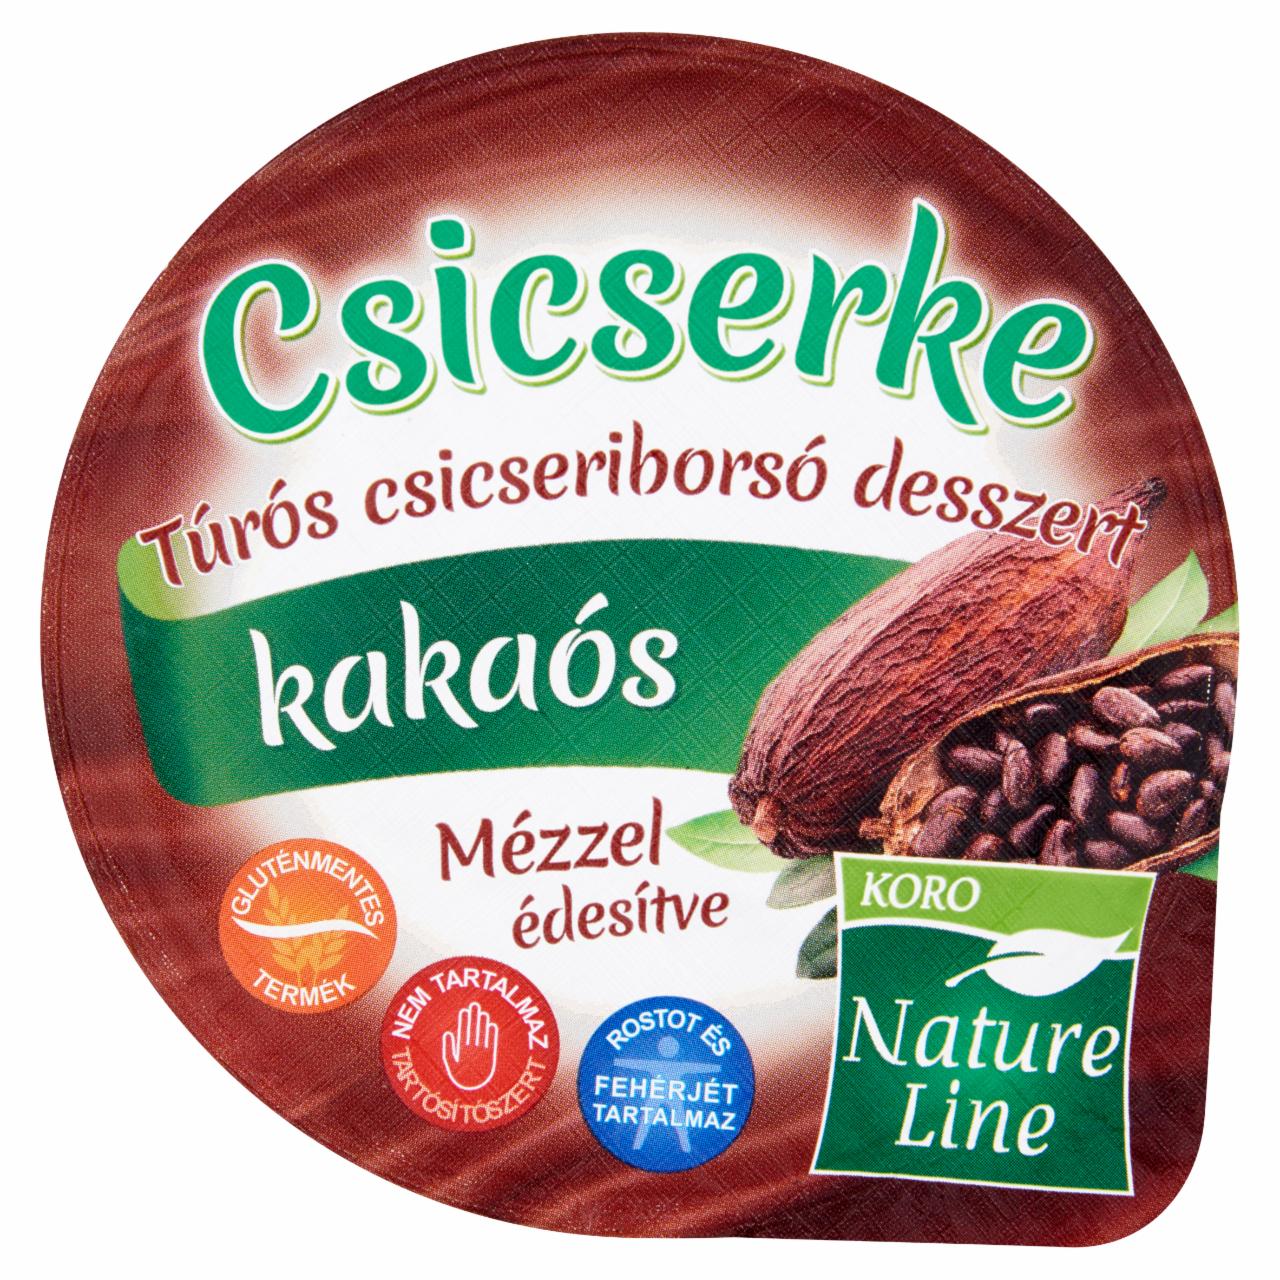 Képek - Koro Nature Line Csicserke kakaós-túrós csicseriborsó desszert 150 g